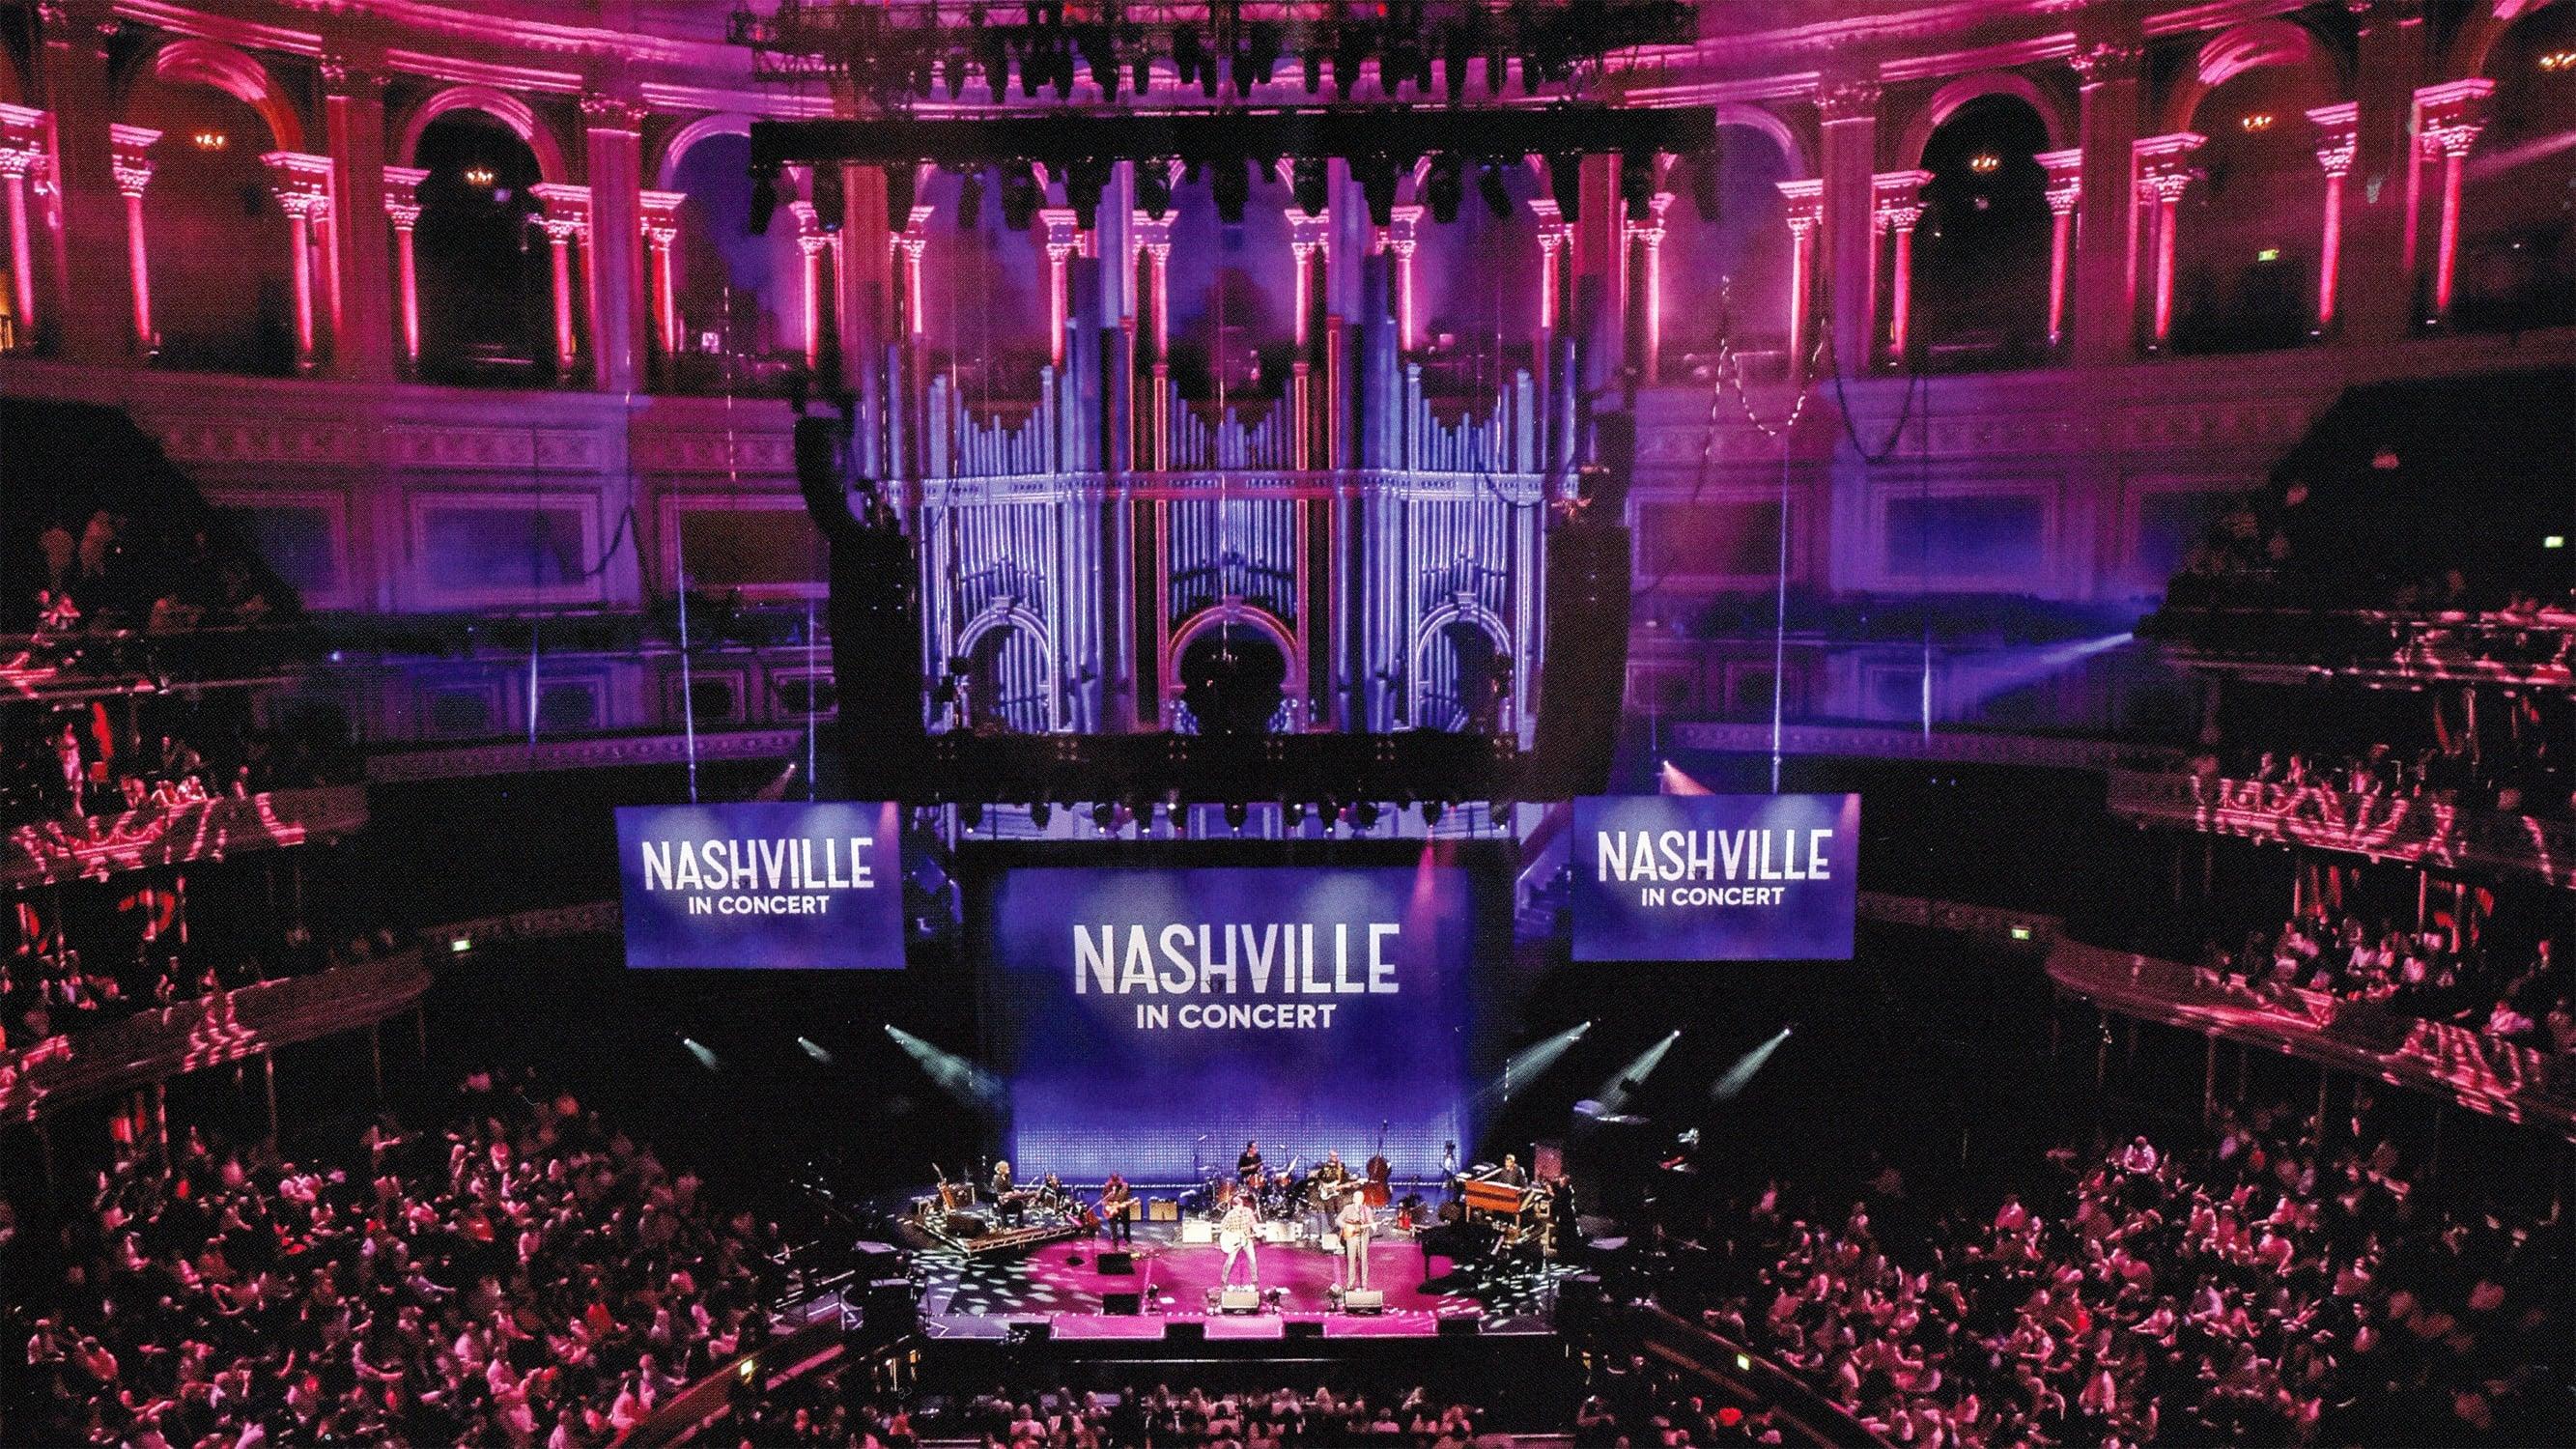 Nashville in Concert backdrop